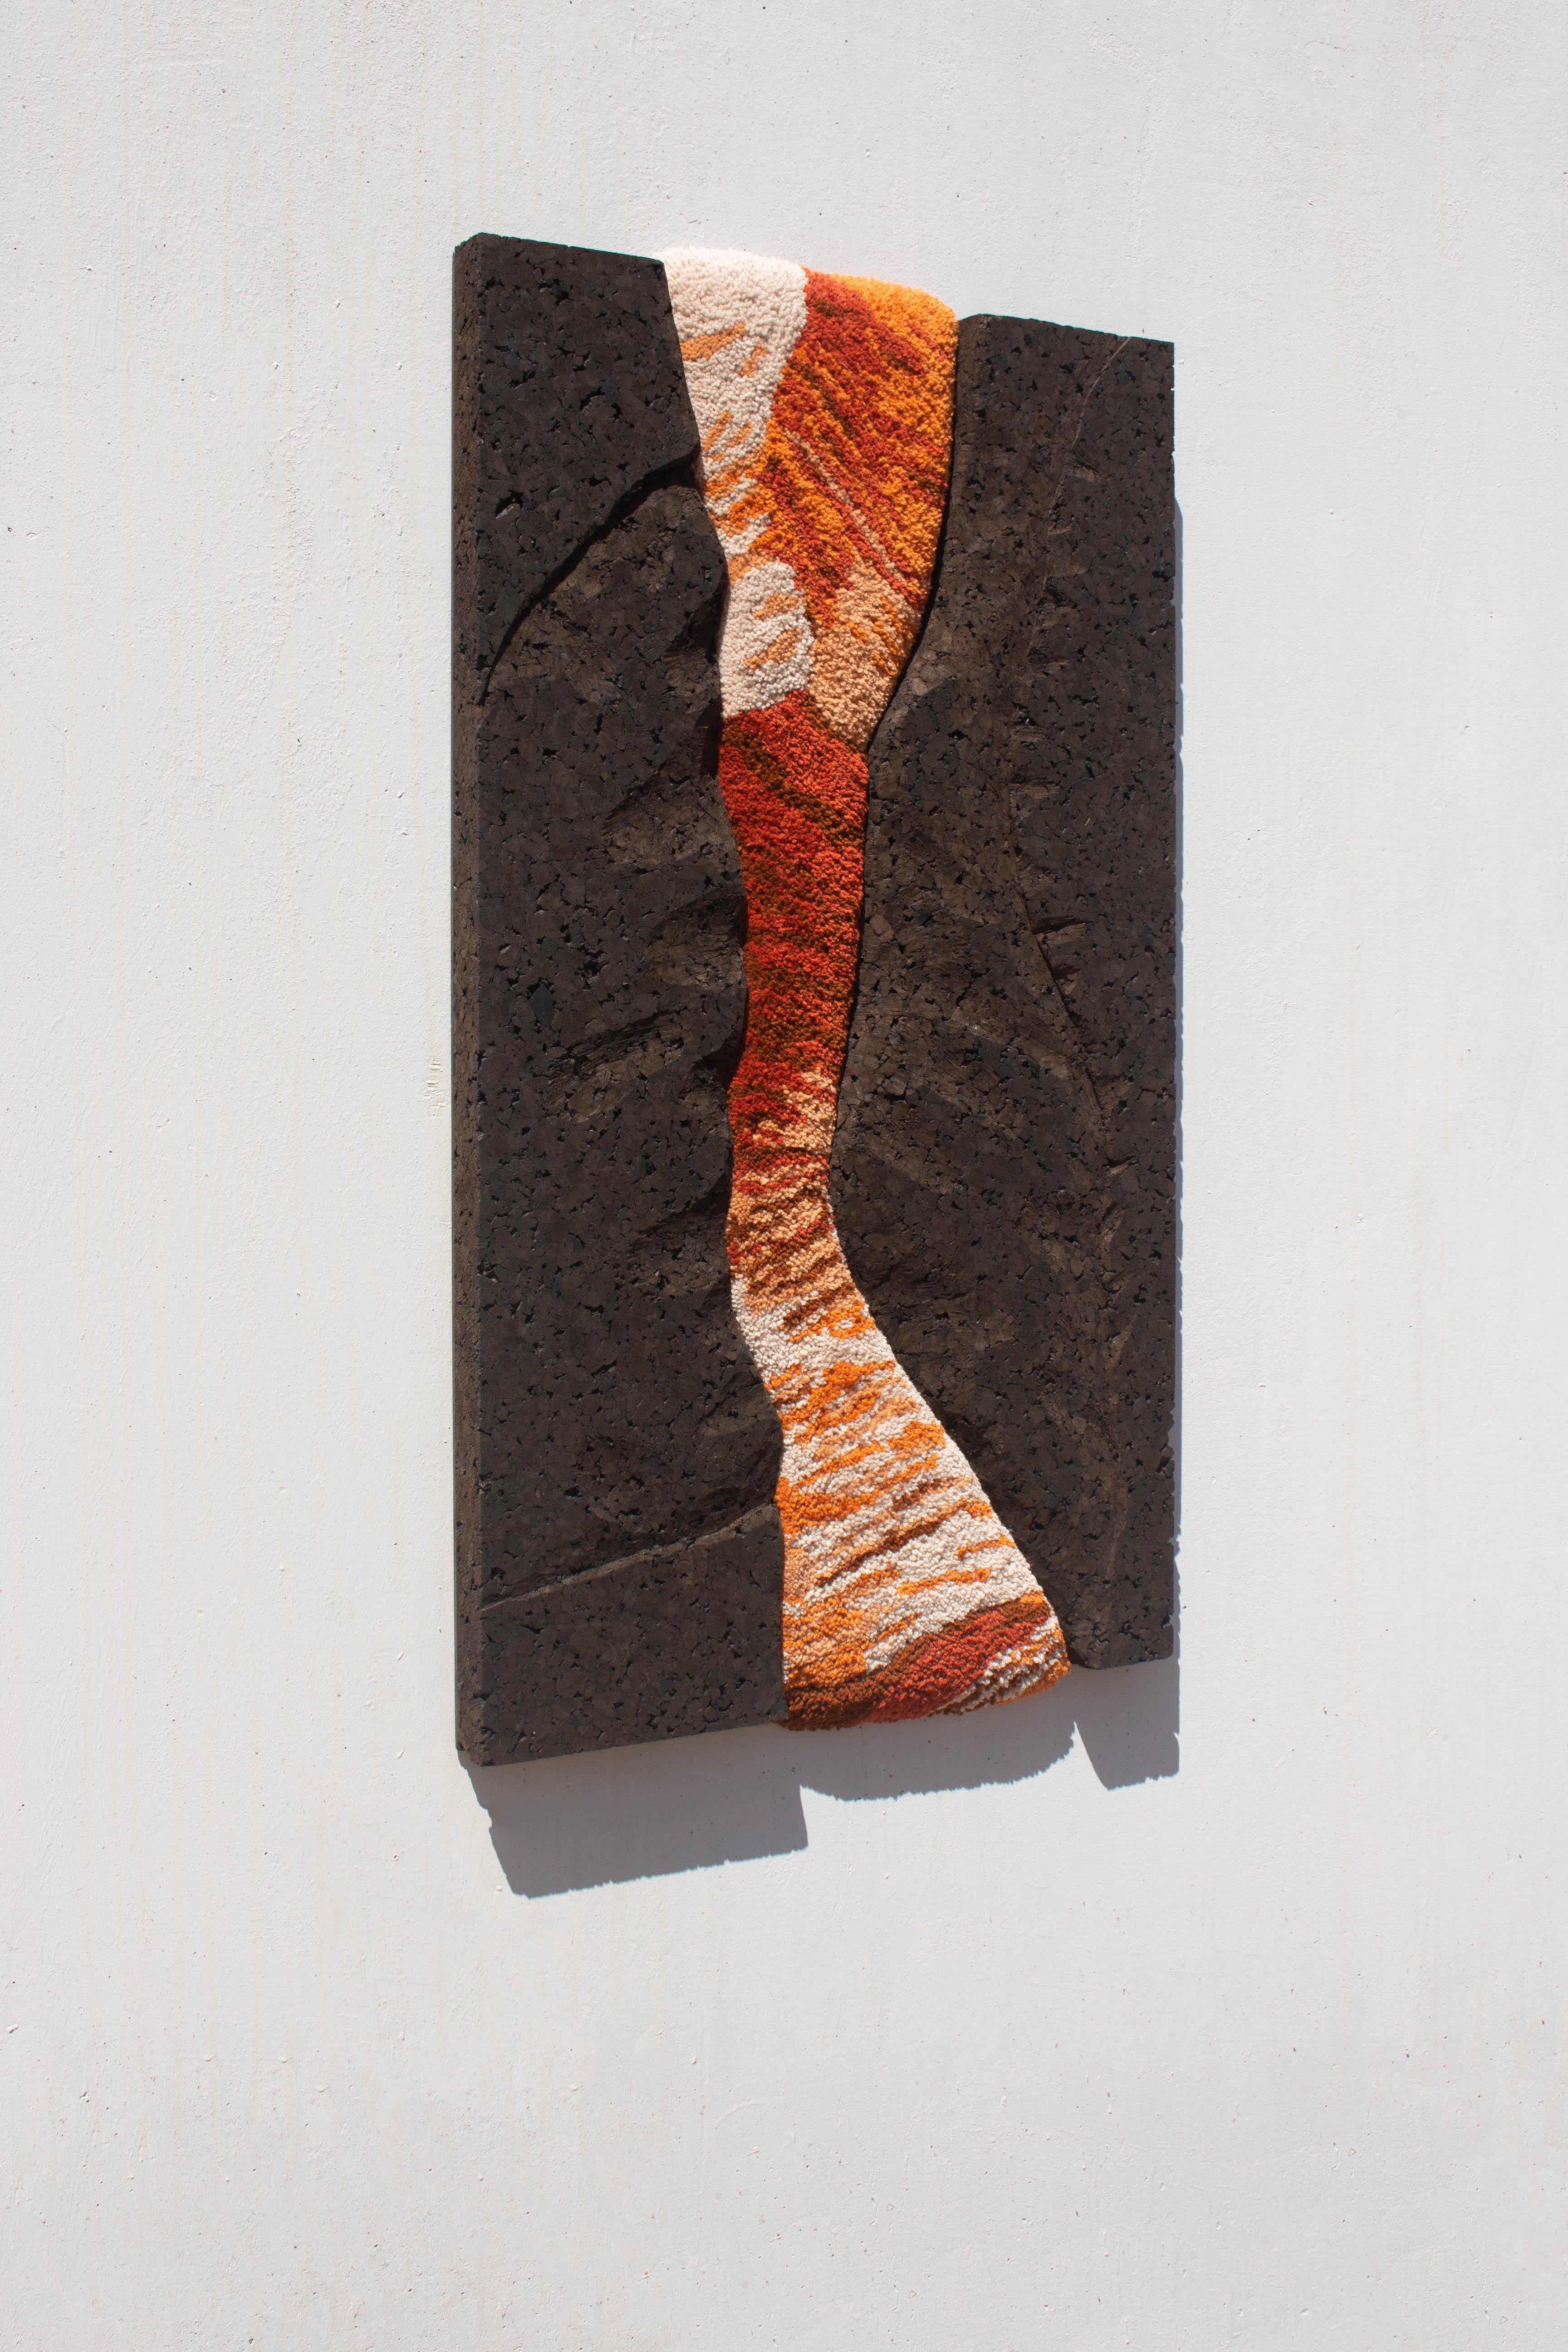 ORANGE LANDSCAPE TAPESTRY est une œuvre d'art contemporaine unique en son genre qui explore les contrastes des paysages rocheux, représentés par les couleurs de la laine et le cadre en liège sculpté. Fabriqué à la main avec de la pure laine